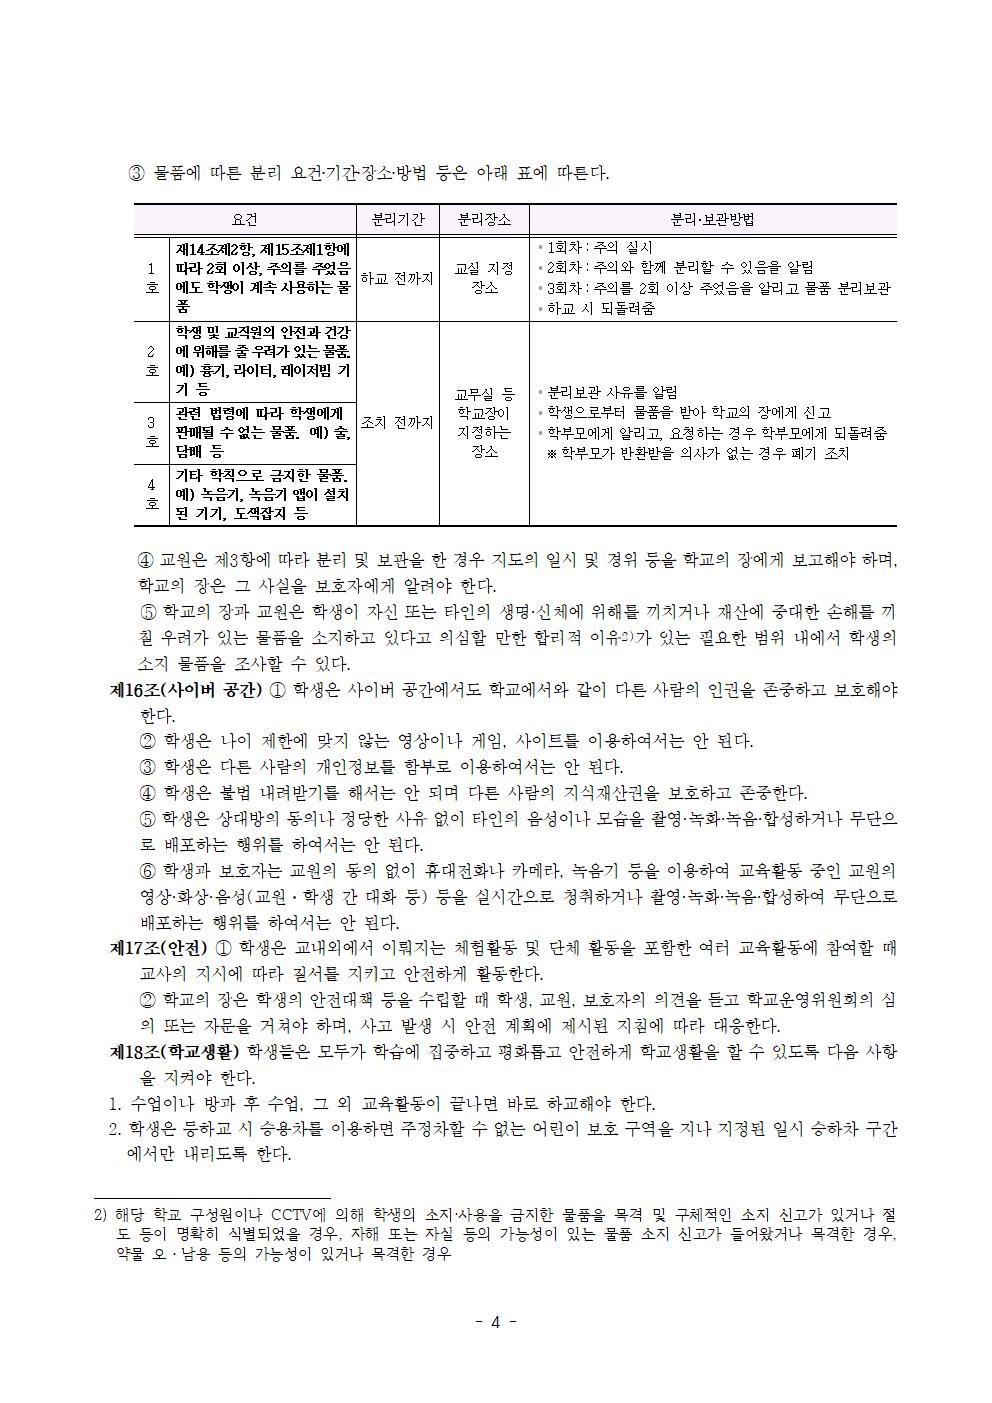 전주효천초등학교 학생의 학교생활에 관한 규정(전부개정, 23.12.22. 공포)004